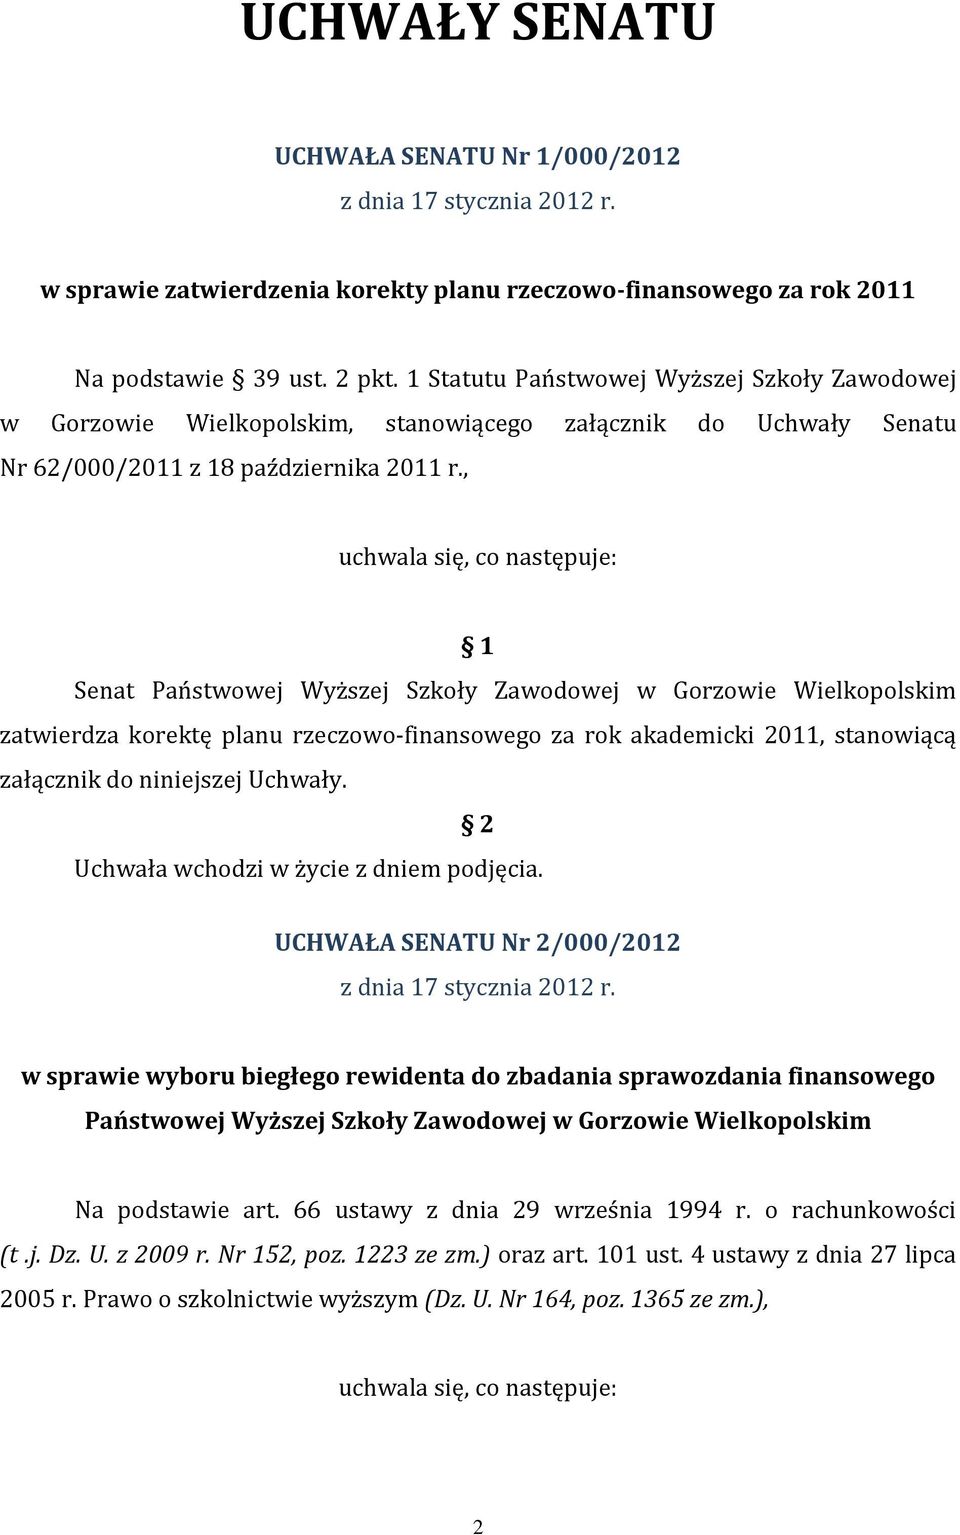 , uchwala się, co następuje: 1 Senat Państwowej Wyższej Szkoły Zawodowej w Gorzowie Wielkopolskim zatwierdza korektę planu rzeczowo-finansowego za rok akademicki 2011, stanowiącą załącznik do